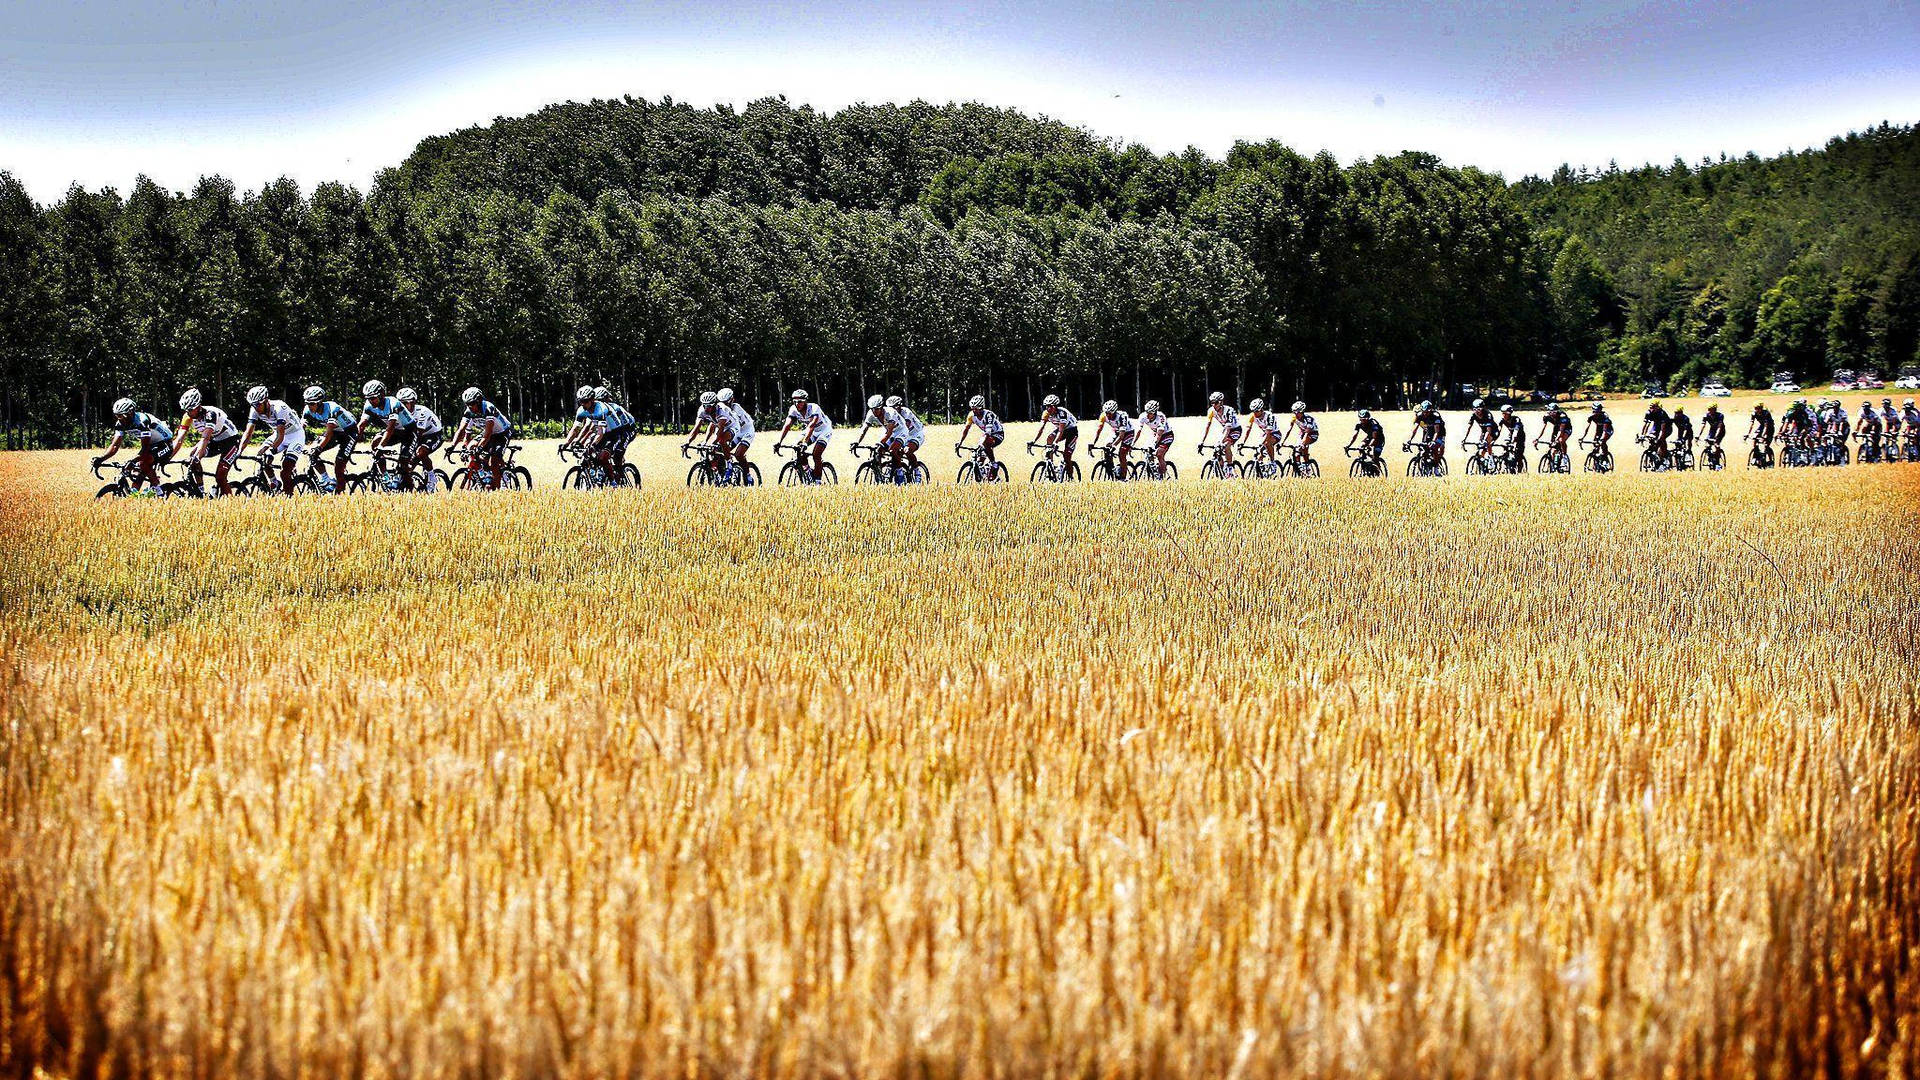 Tour De France Annual Bike Race Background